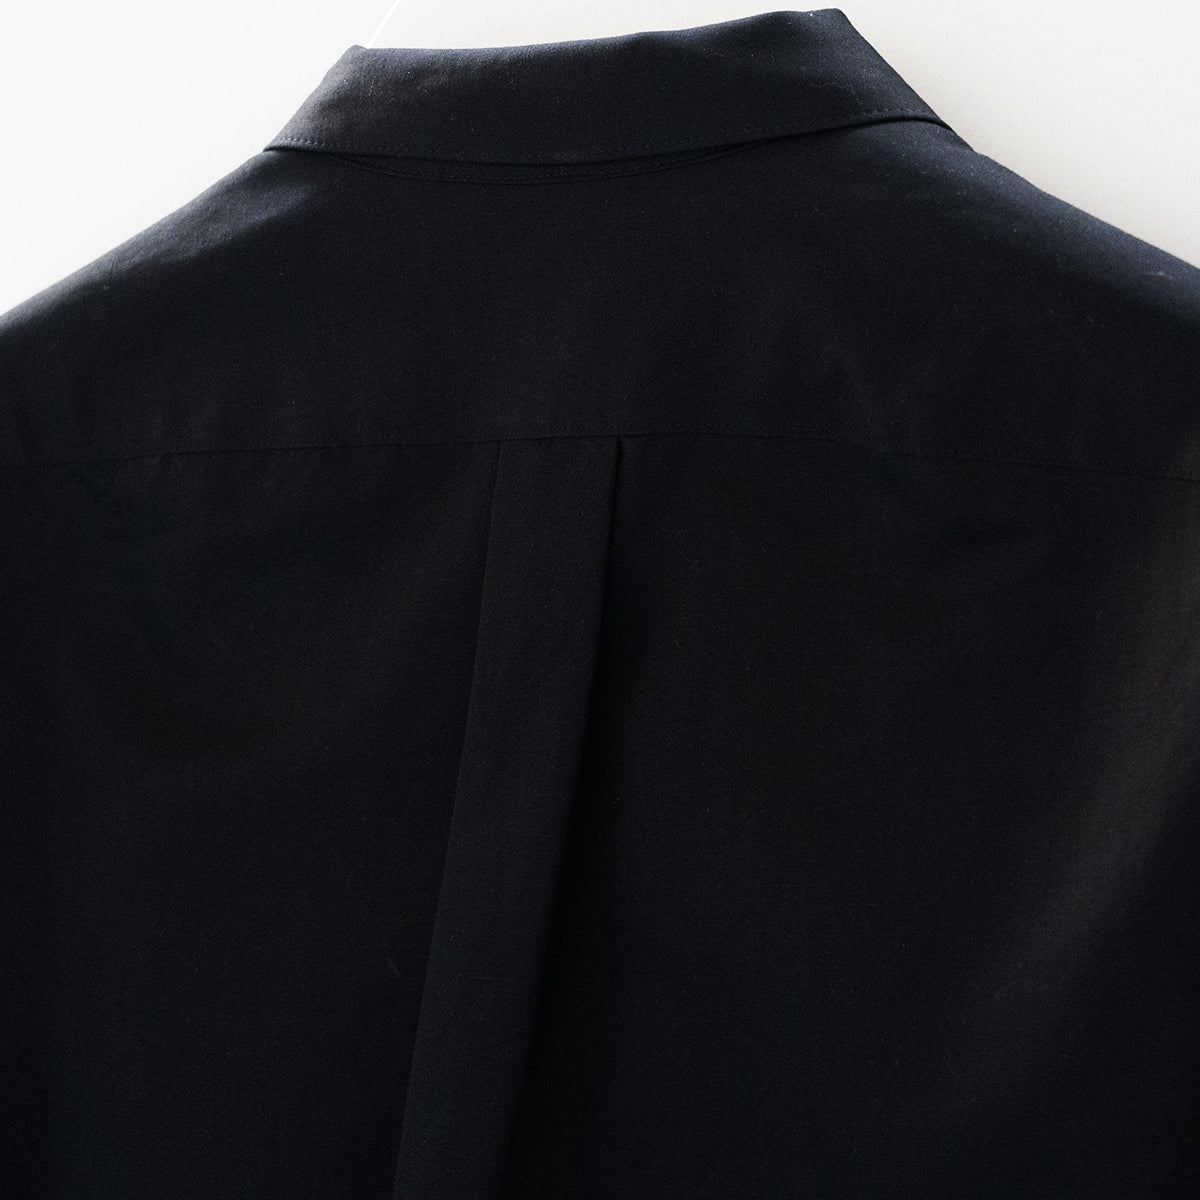 COLONY CLOTHING /  コットンリネンシルク シャツジャケット / CC2301-JK01W-4